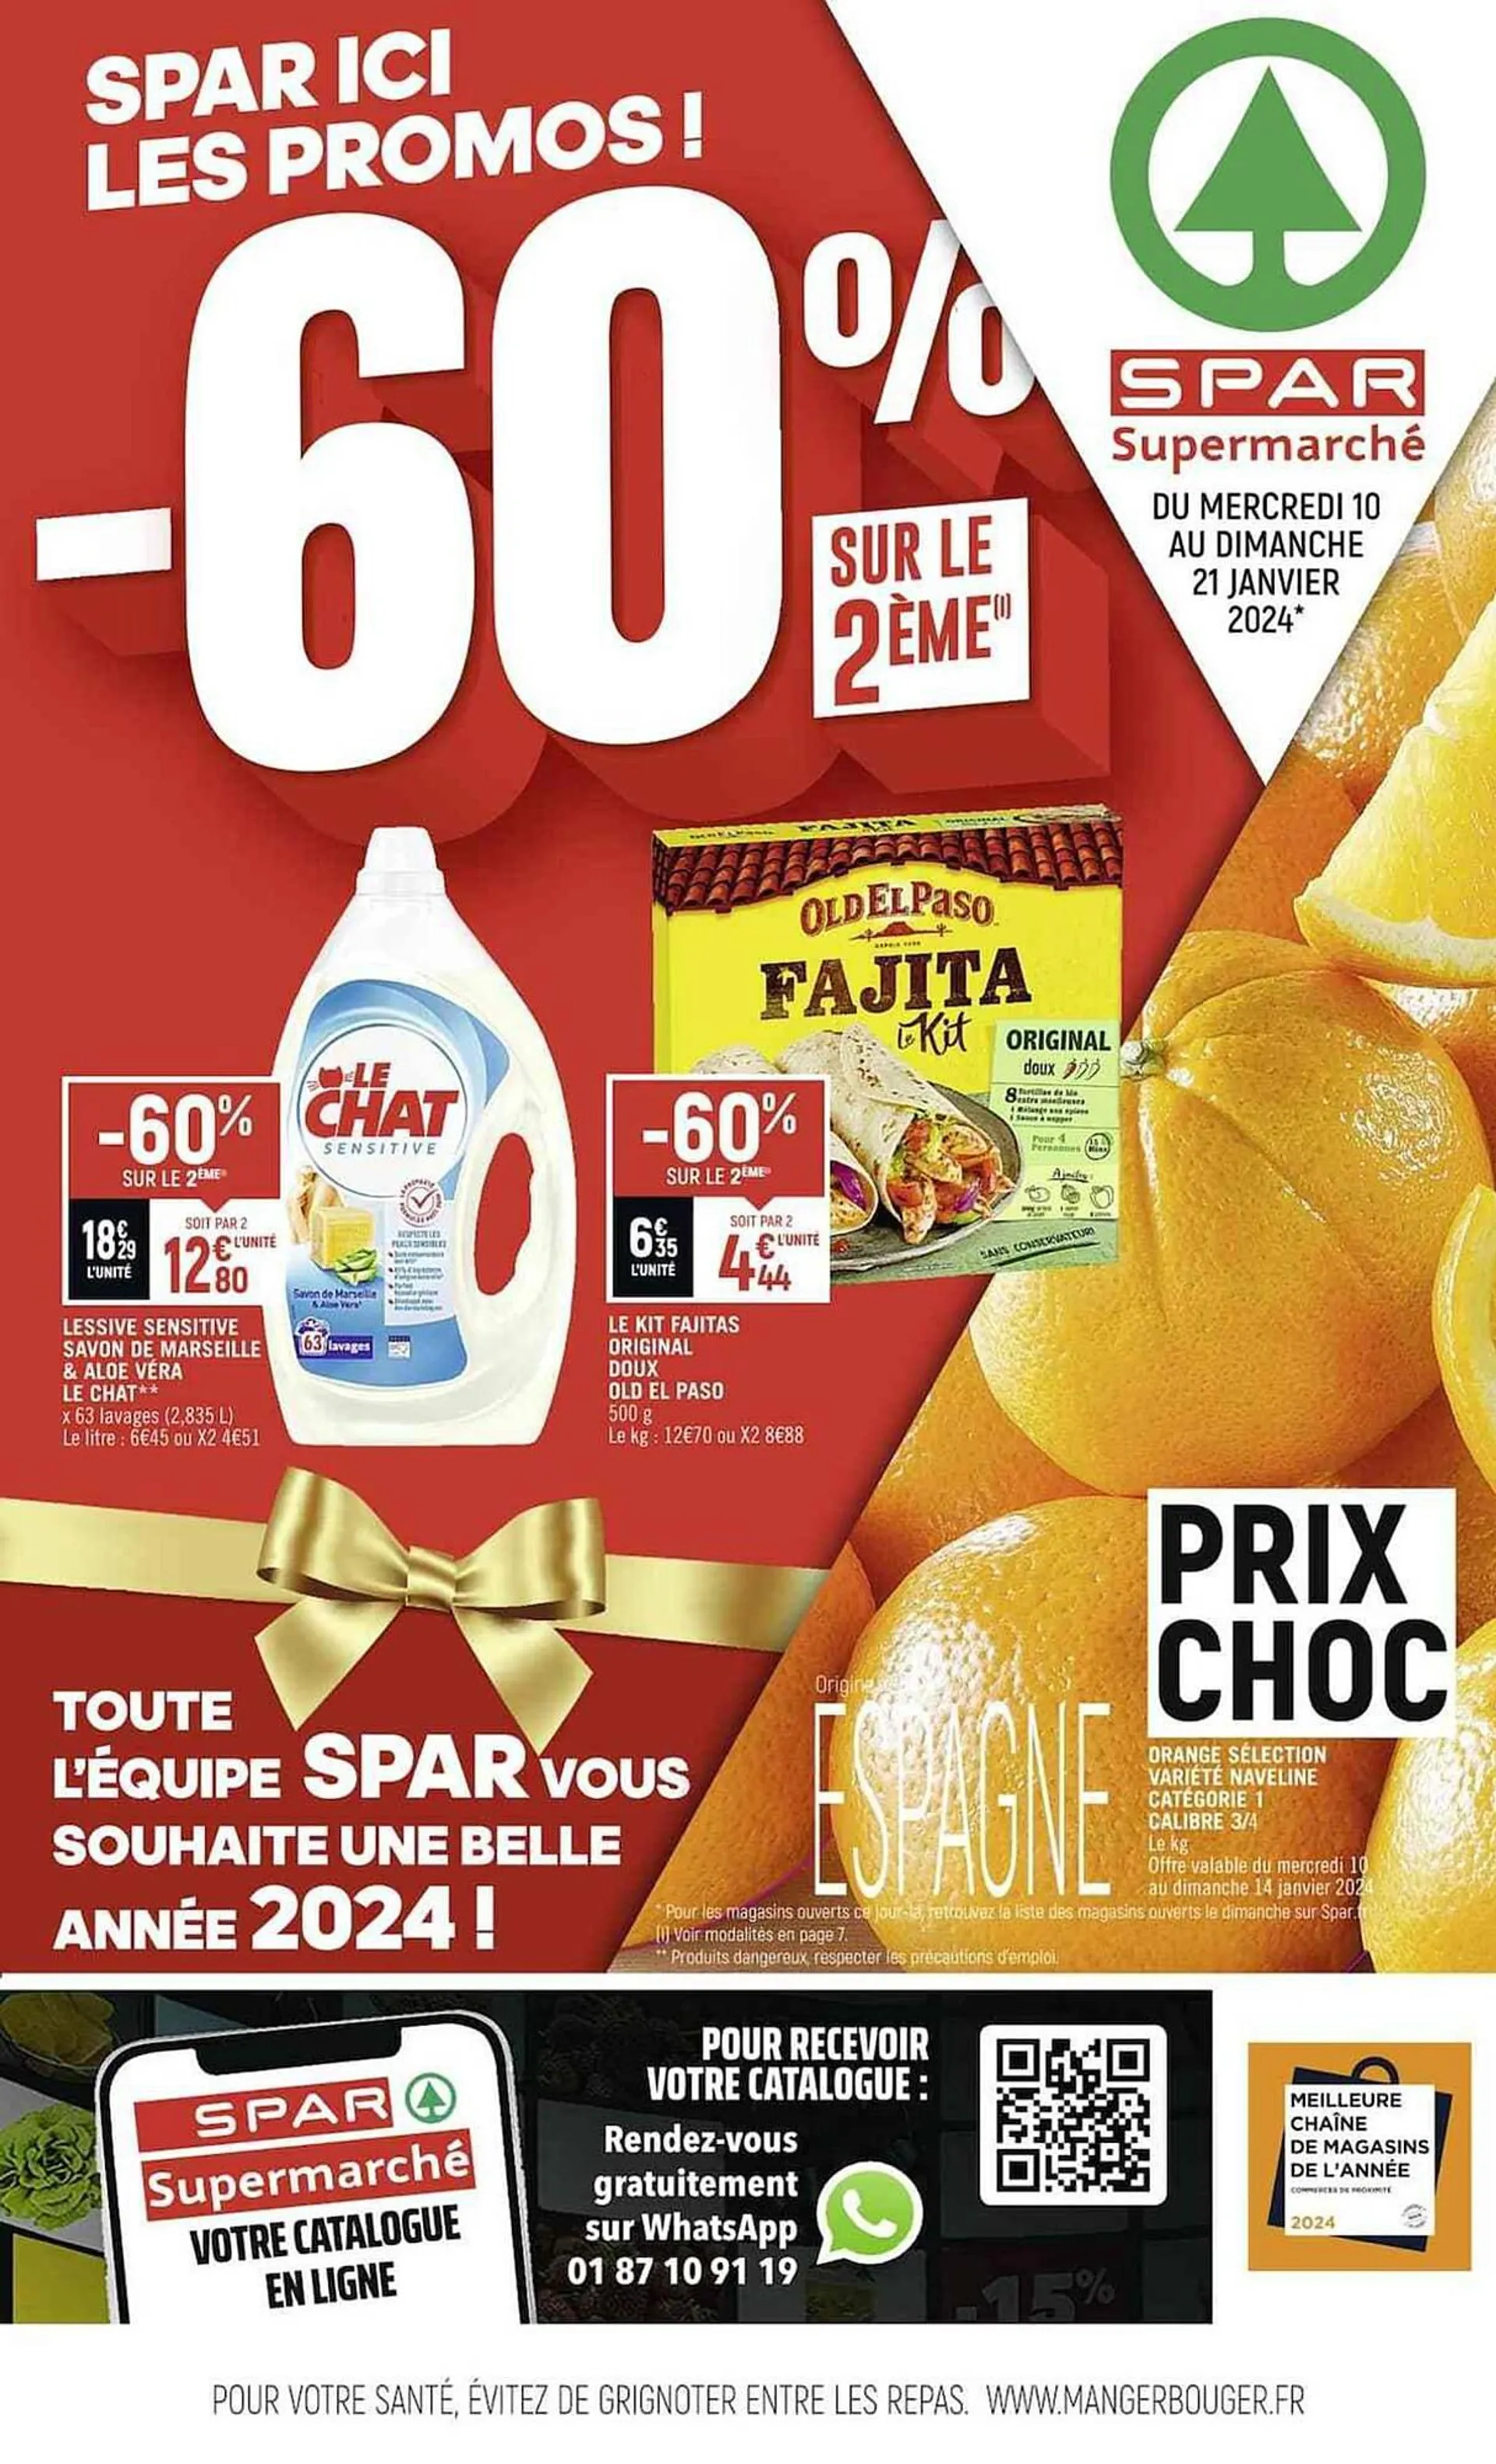 Catalogue Spar Supermarché du 5 janvier au 21 janvier 2024 - Catalogue page 1